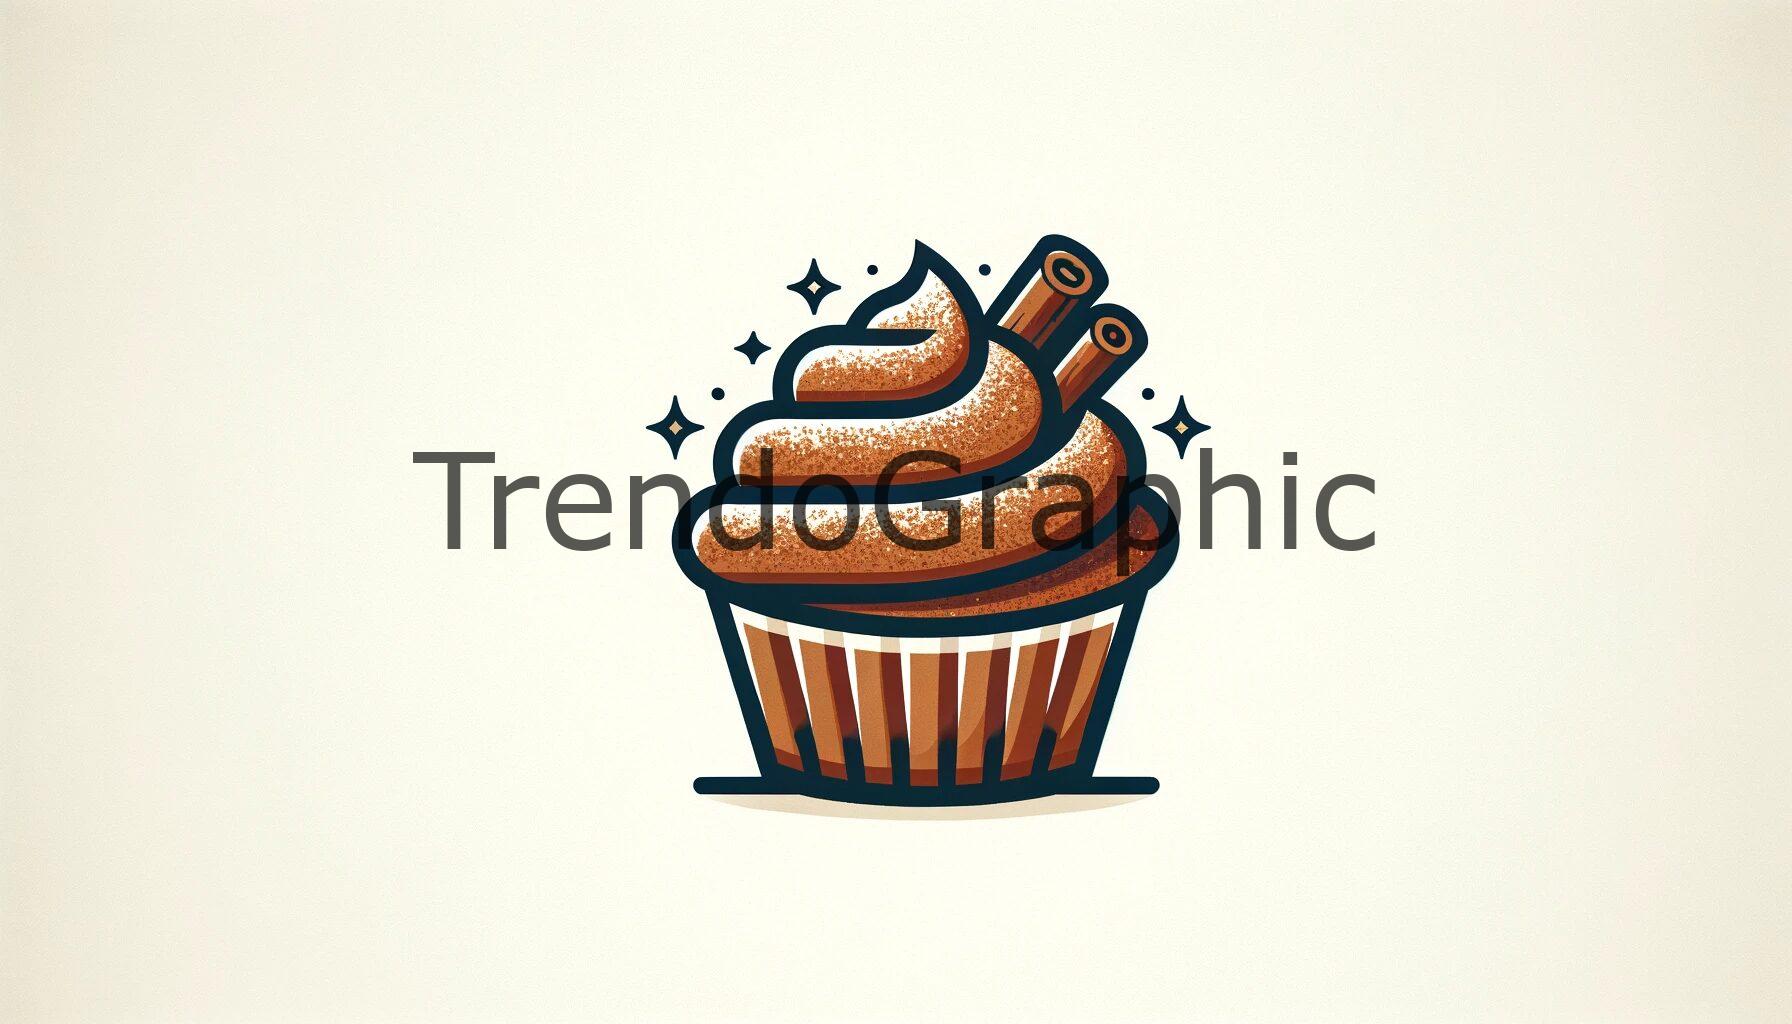 Snickerdoodle Cupcake: Cinnamon Sugar